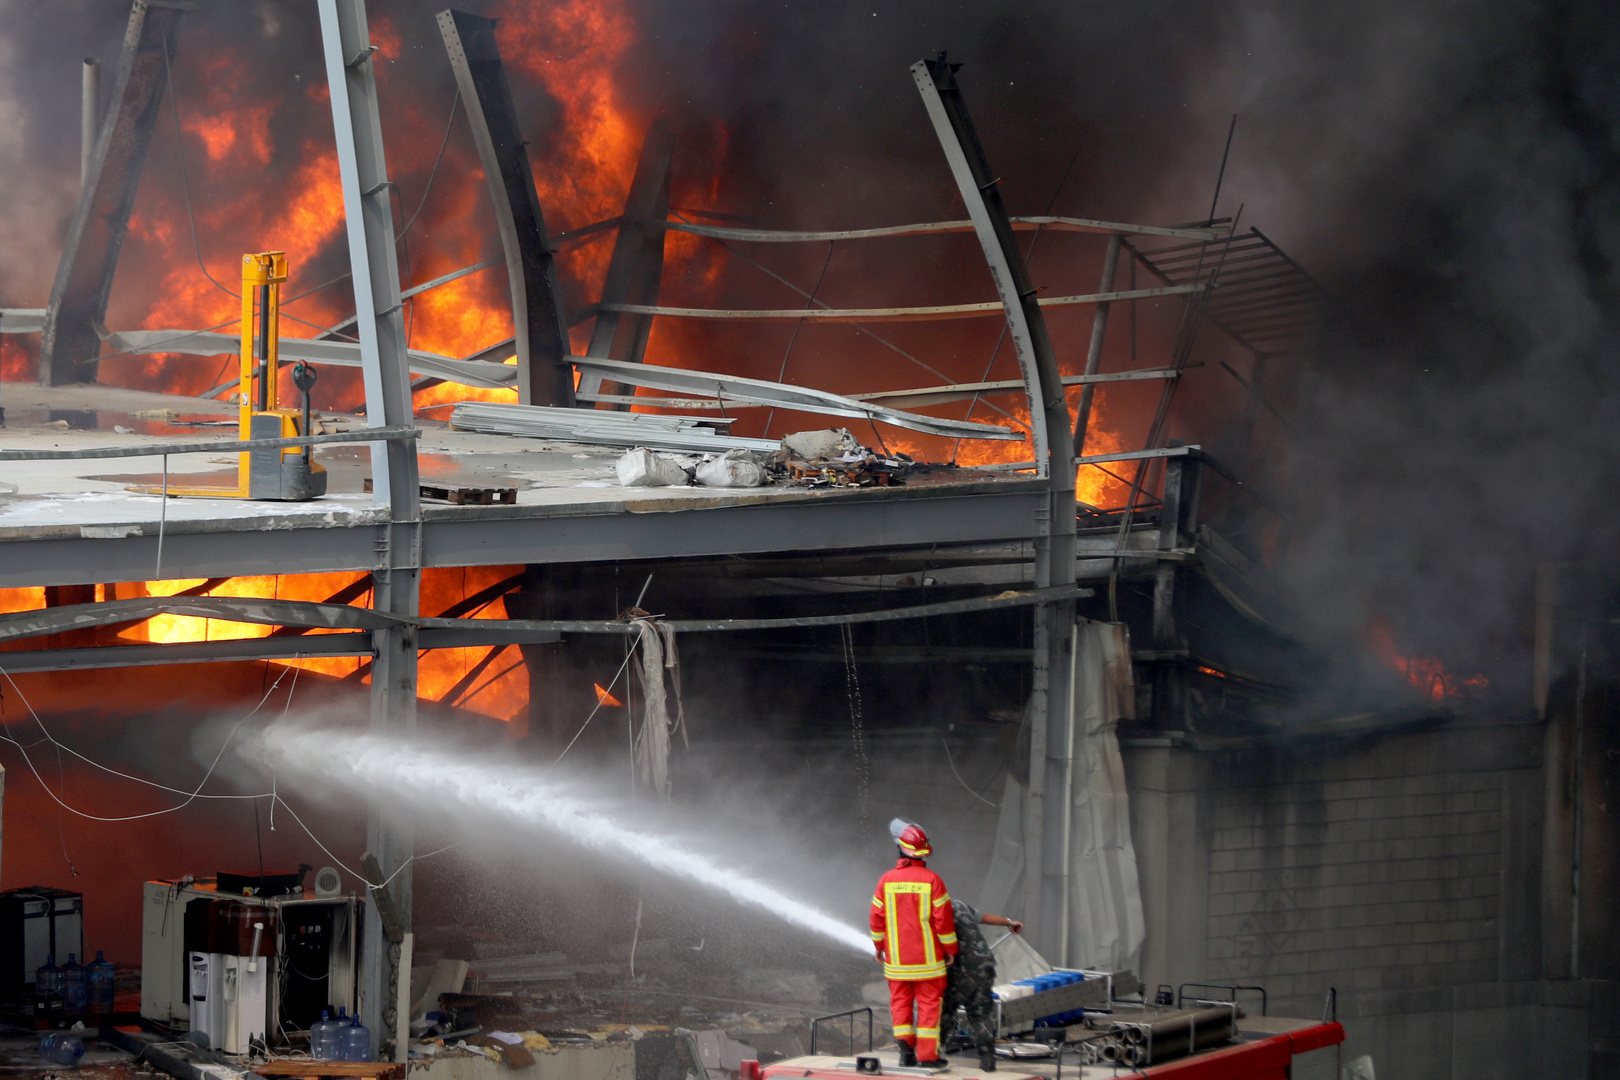 مسؤول لبناني يكشف سبب حريق مرفأ بيروت